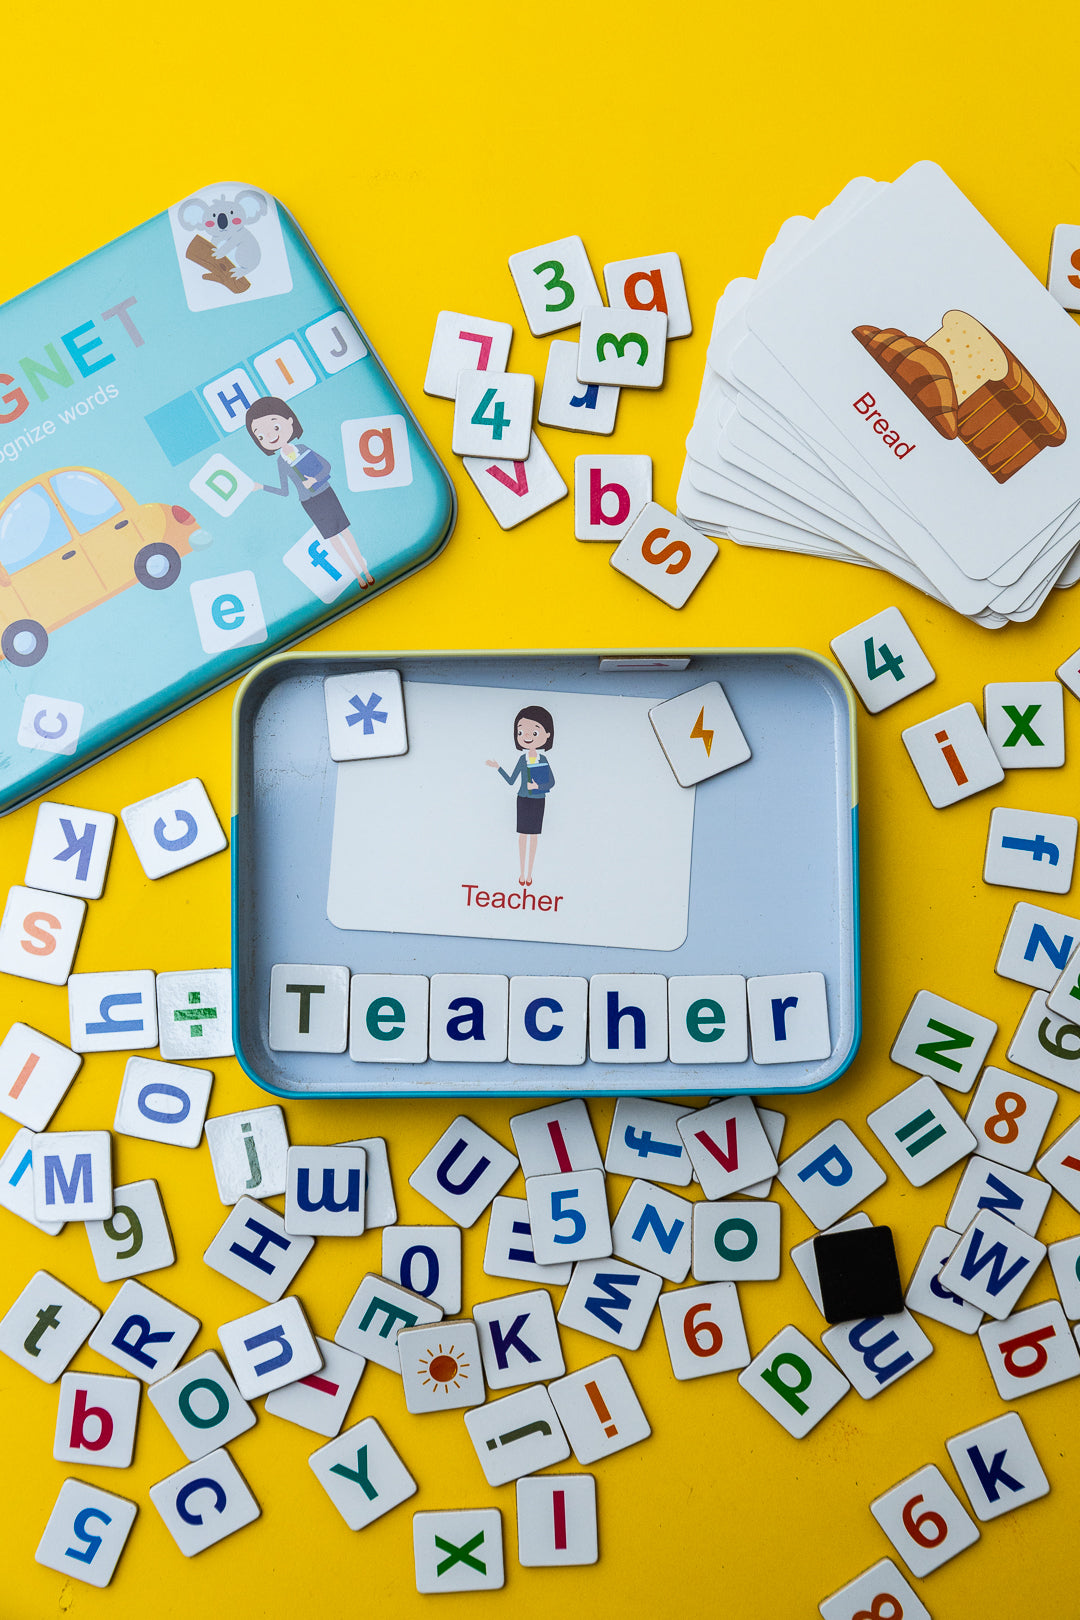 See & Spell - Juguete de aprendizaje para niños en edad preescolar, juego  de letras magnéticas a juego, letras magnéticas del alfabeto, juego de